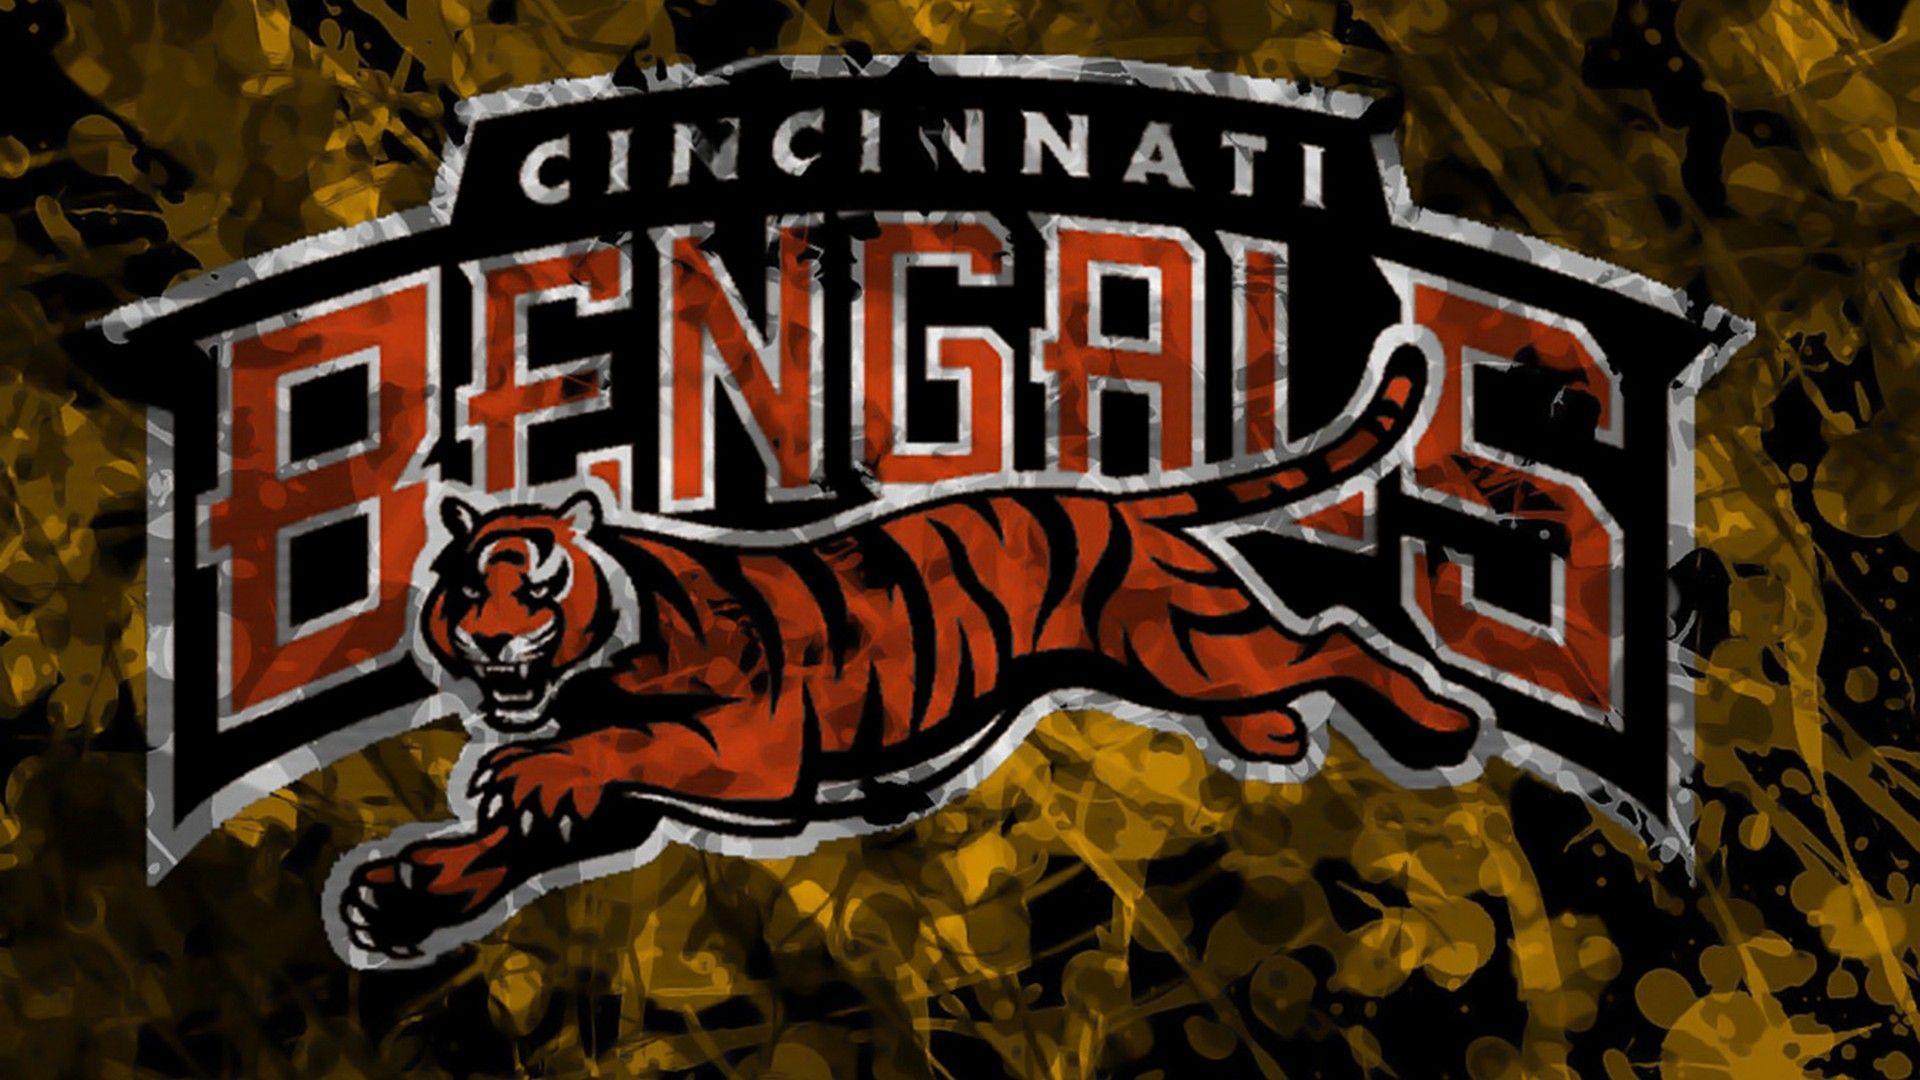 Wallpaper HD Cincinnati Bengals NFL Football Wallpaper. Cincinnati bengals, Bengals, Cincinnati